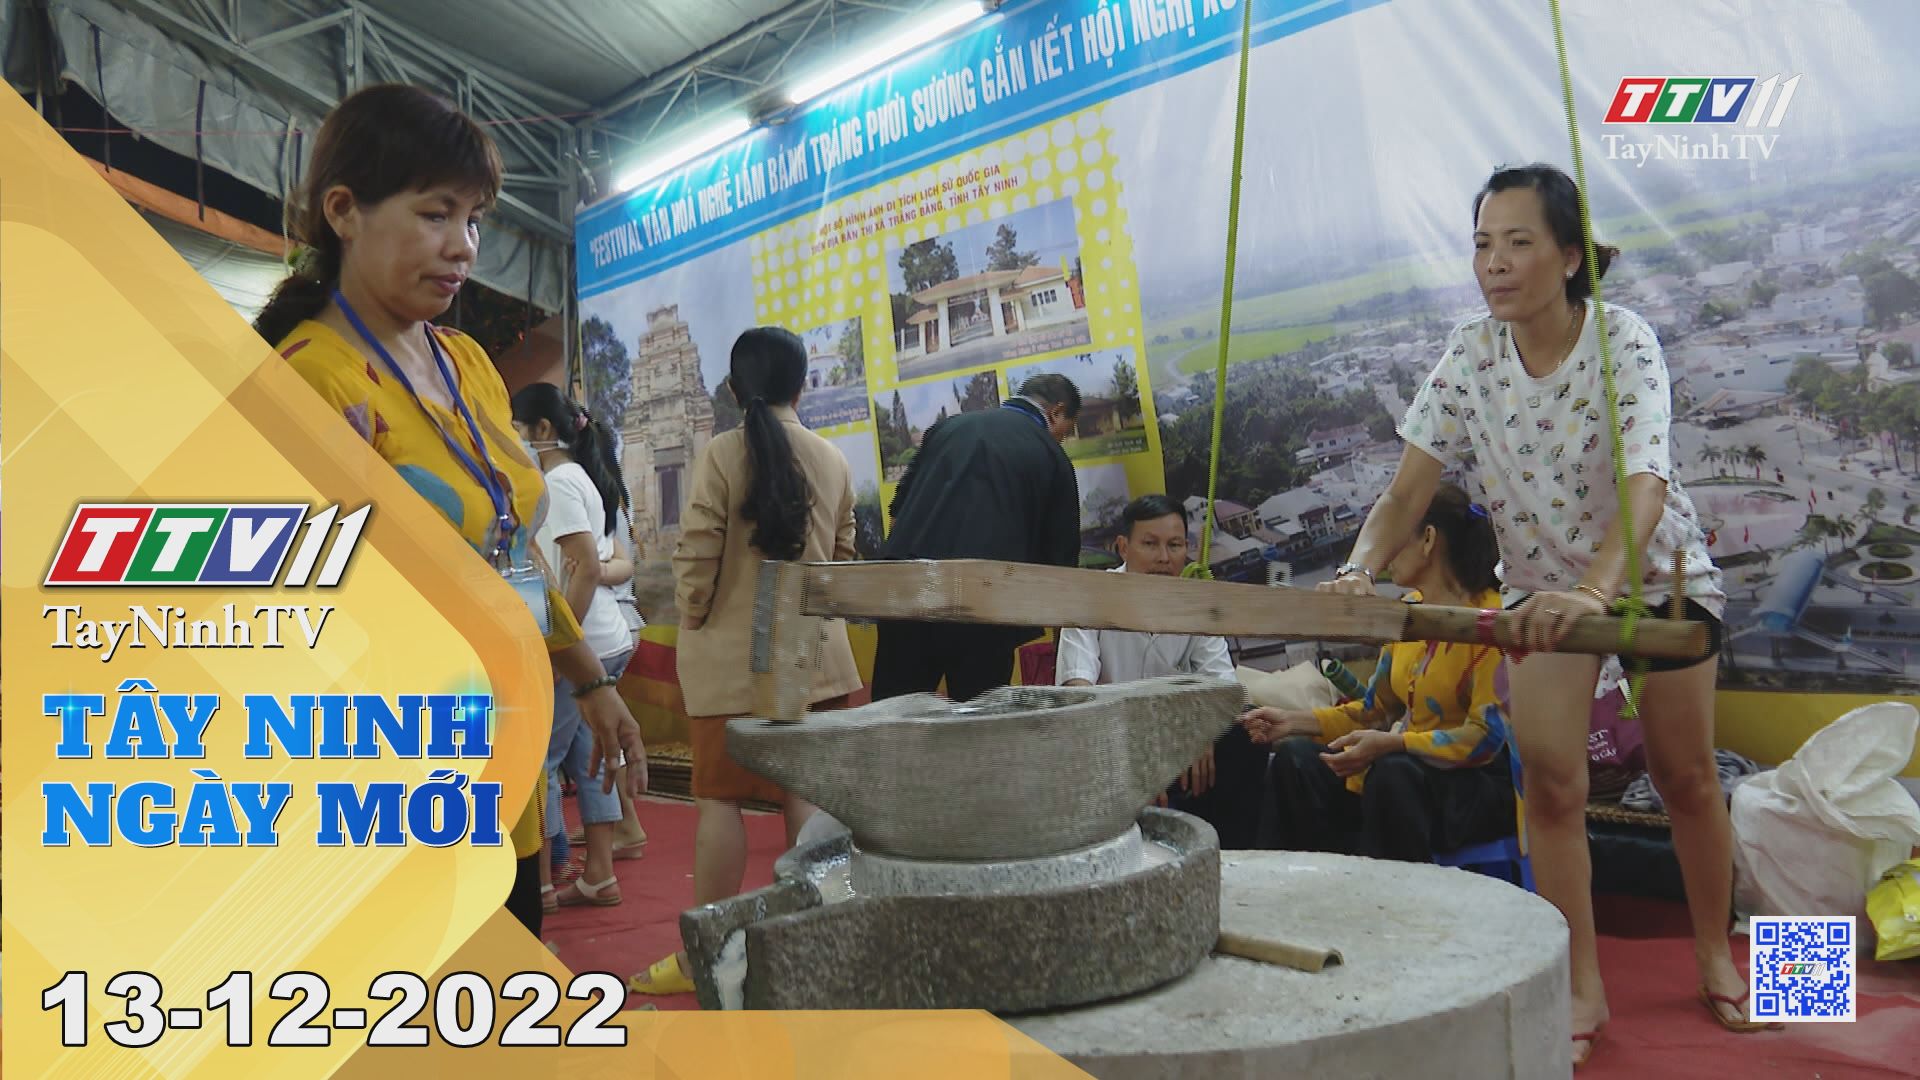 Tây Ninh ngày mới 13-12-2022 | Tin tức hôm nay | TayNinhTV